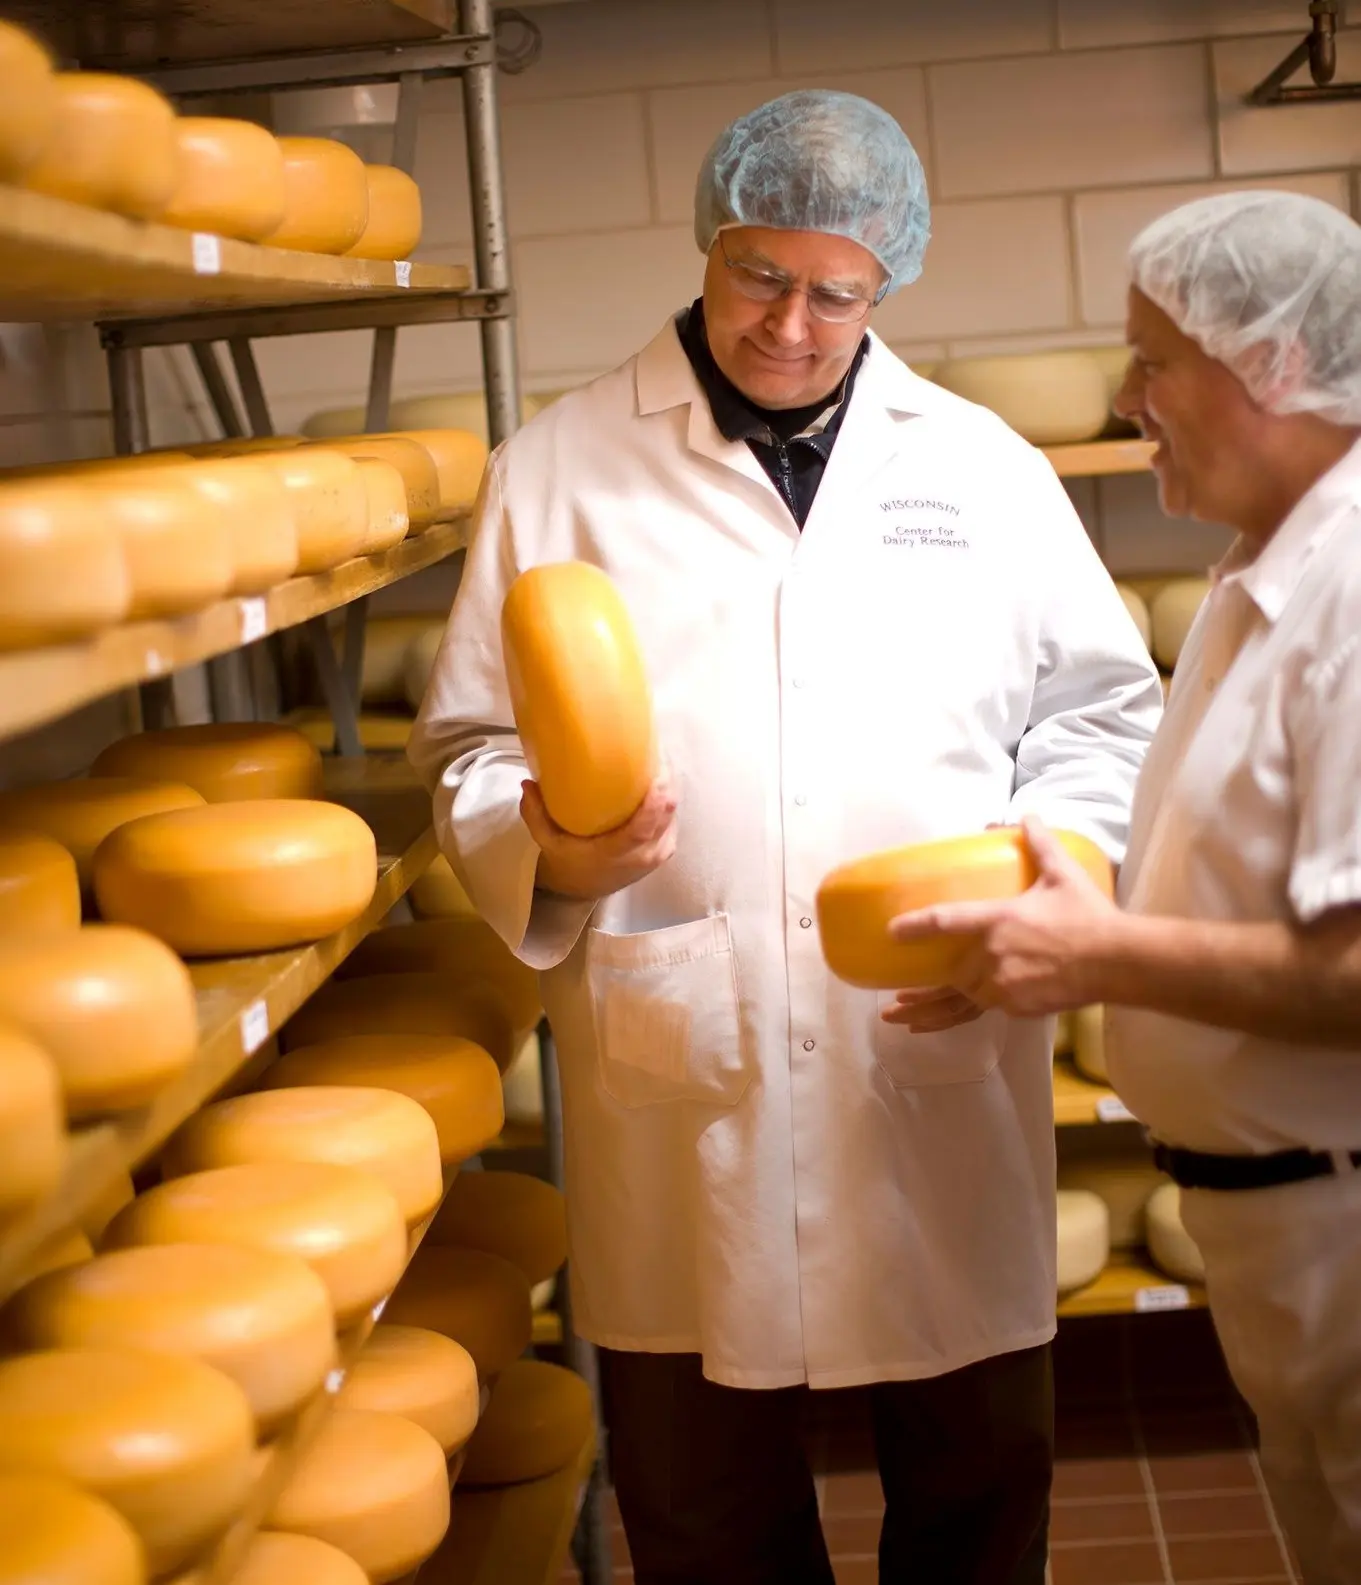 industria de quesos en colombia - Cómo se encuentra el sector lácteo en Colombia